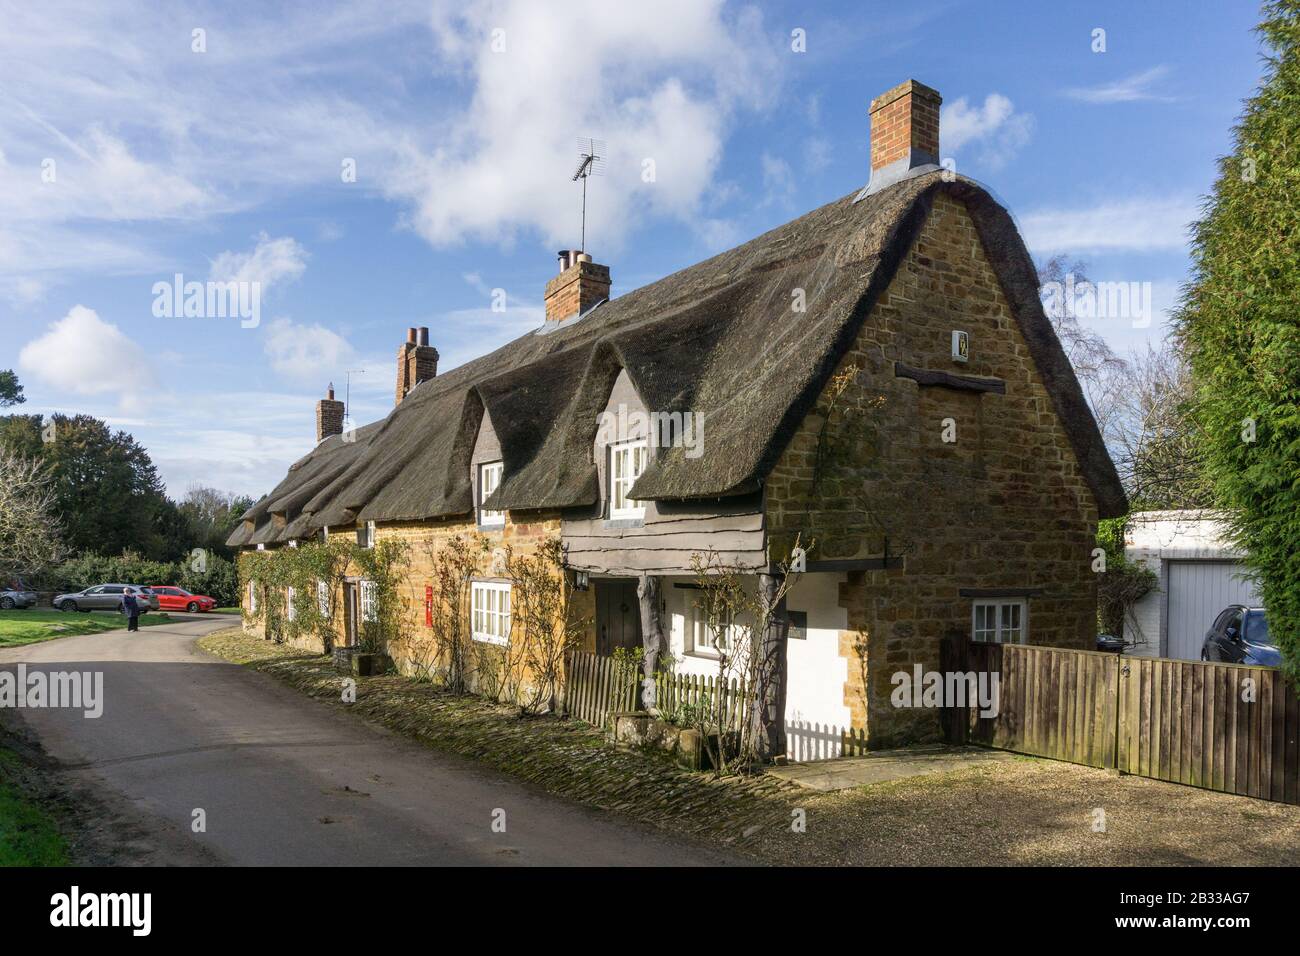 Fila di cottage terrazzati con tetto di paglia nella pittoresca frazione di Brockhall, Northamptonshire, Regno Unito Foto Stock